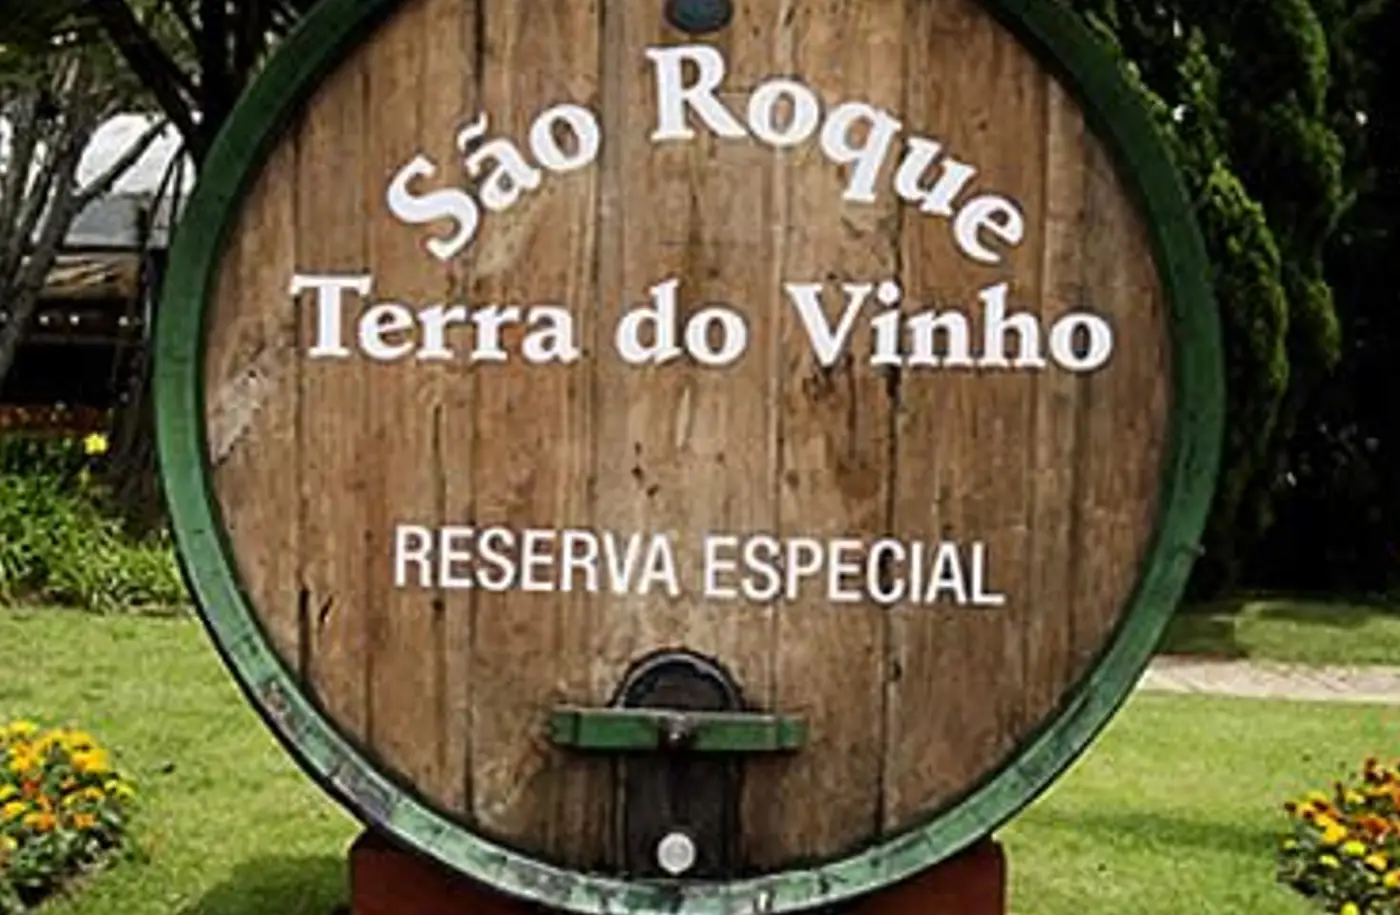 Excursão para São Roque I Rota do Vinho I Angulo Travel